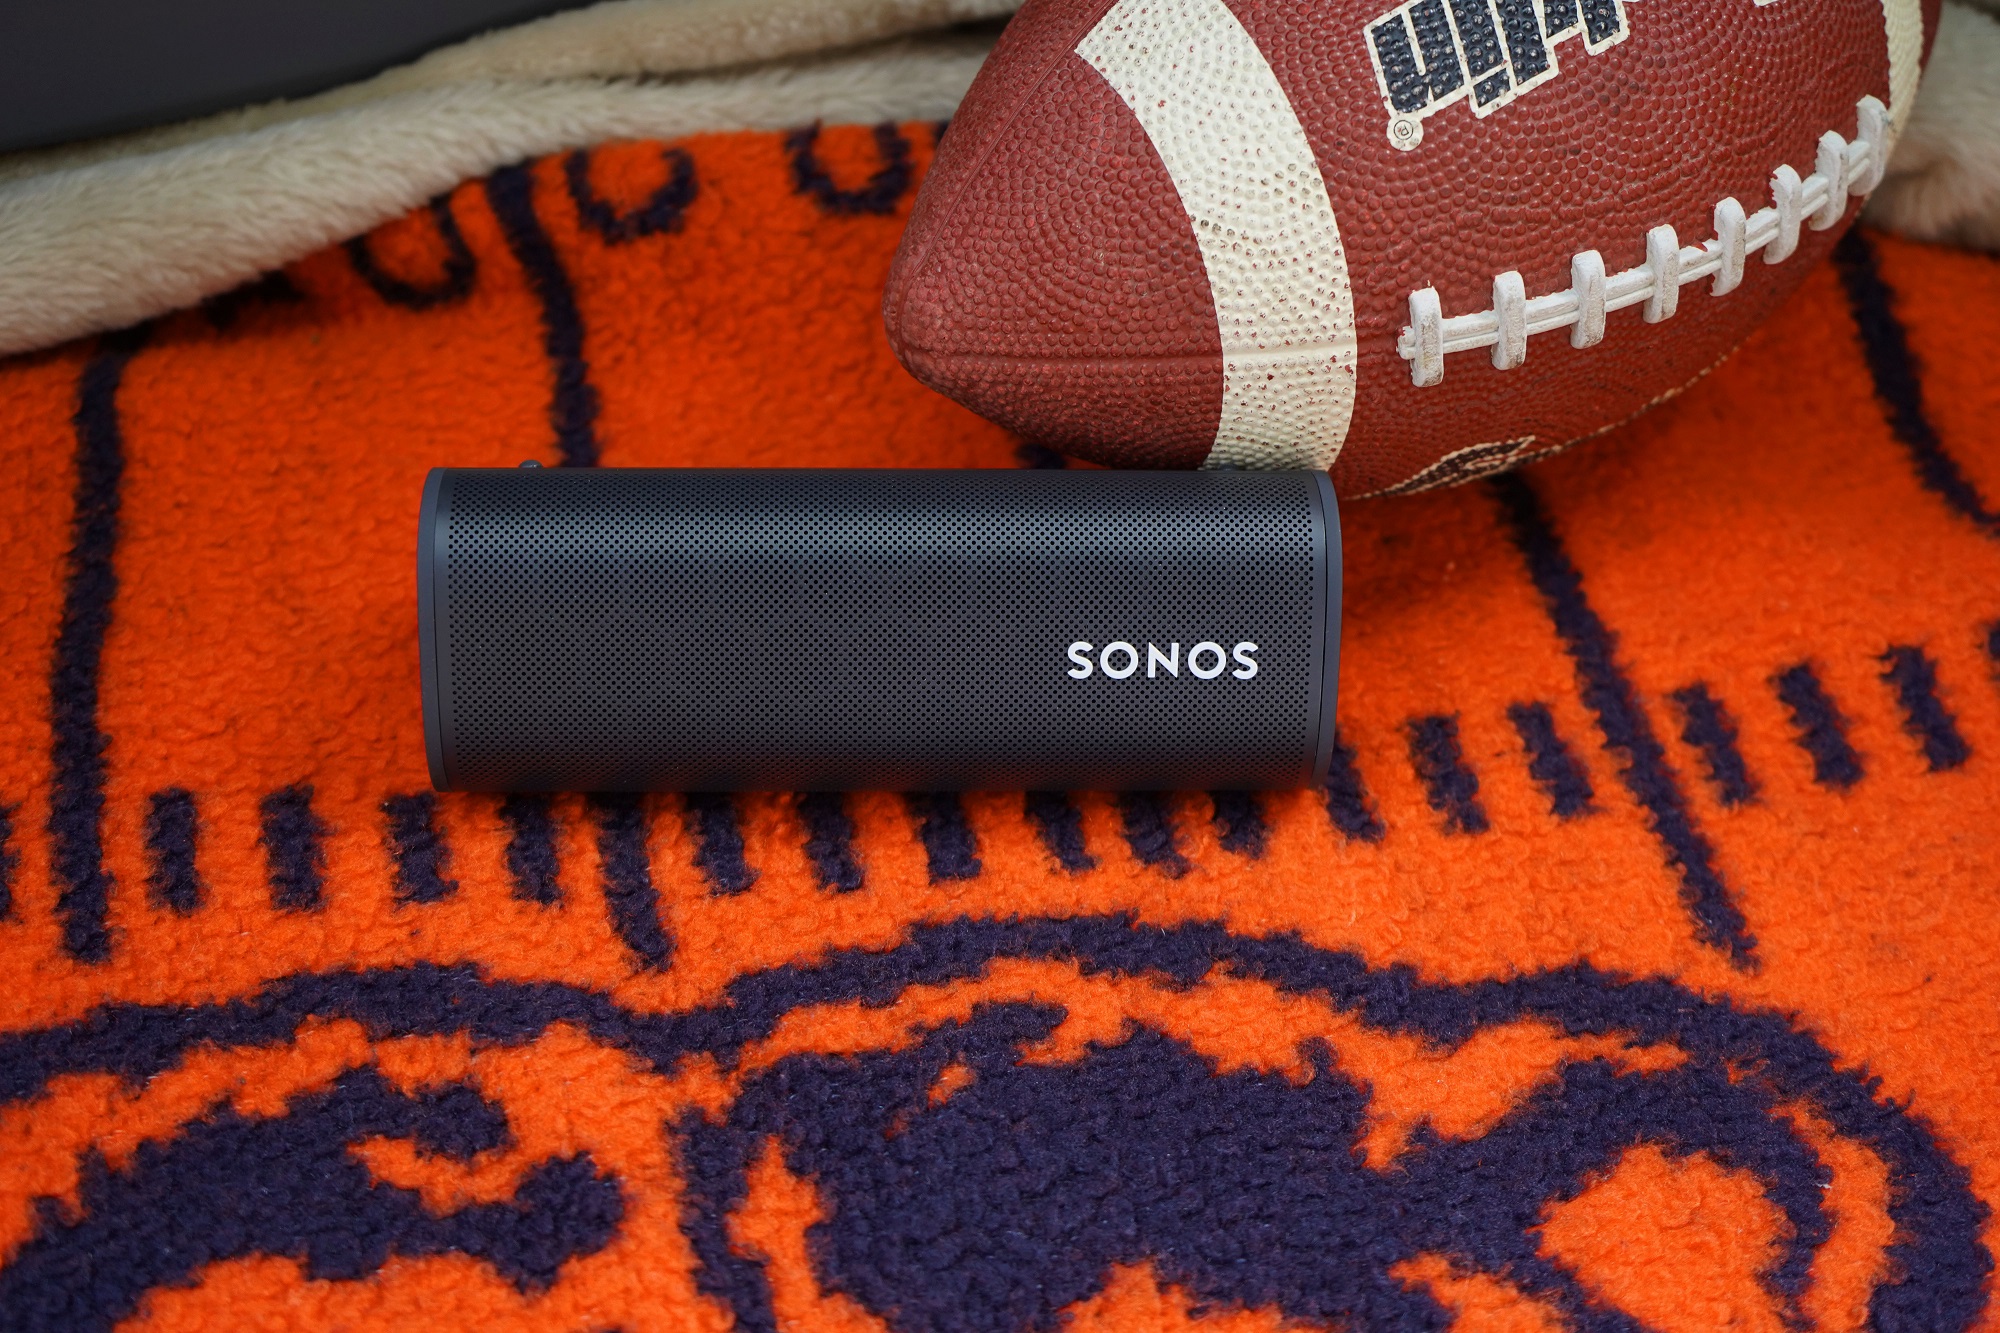 Sonos speaker on a Chicago Bears blanket